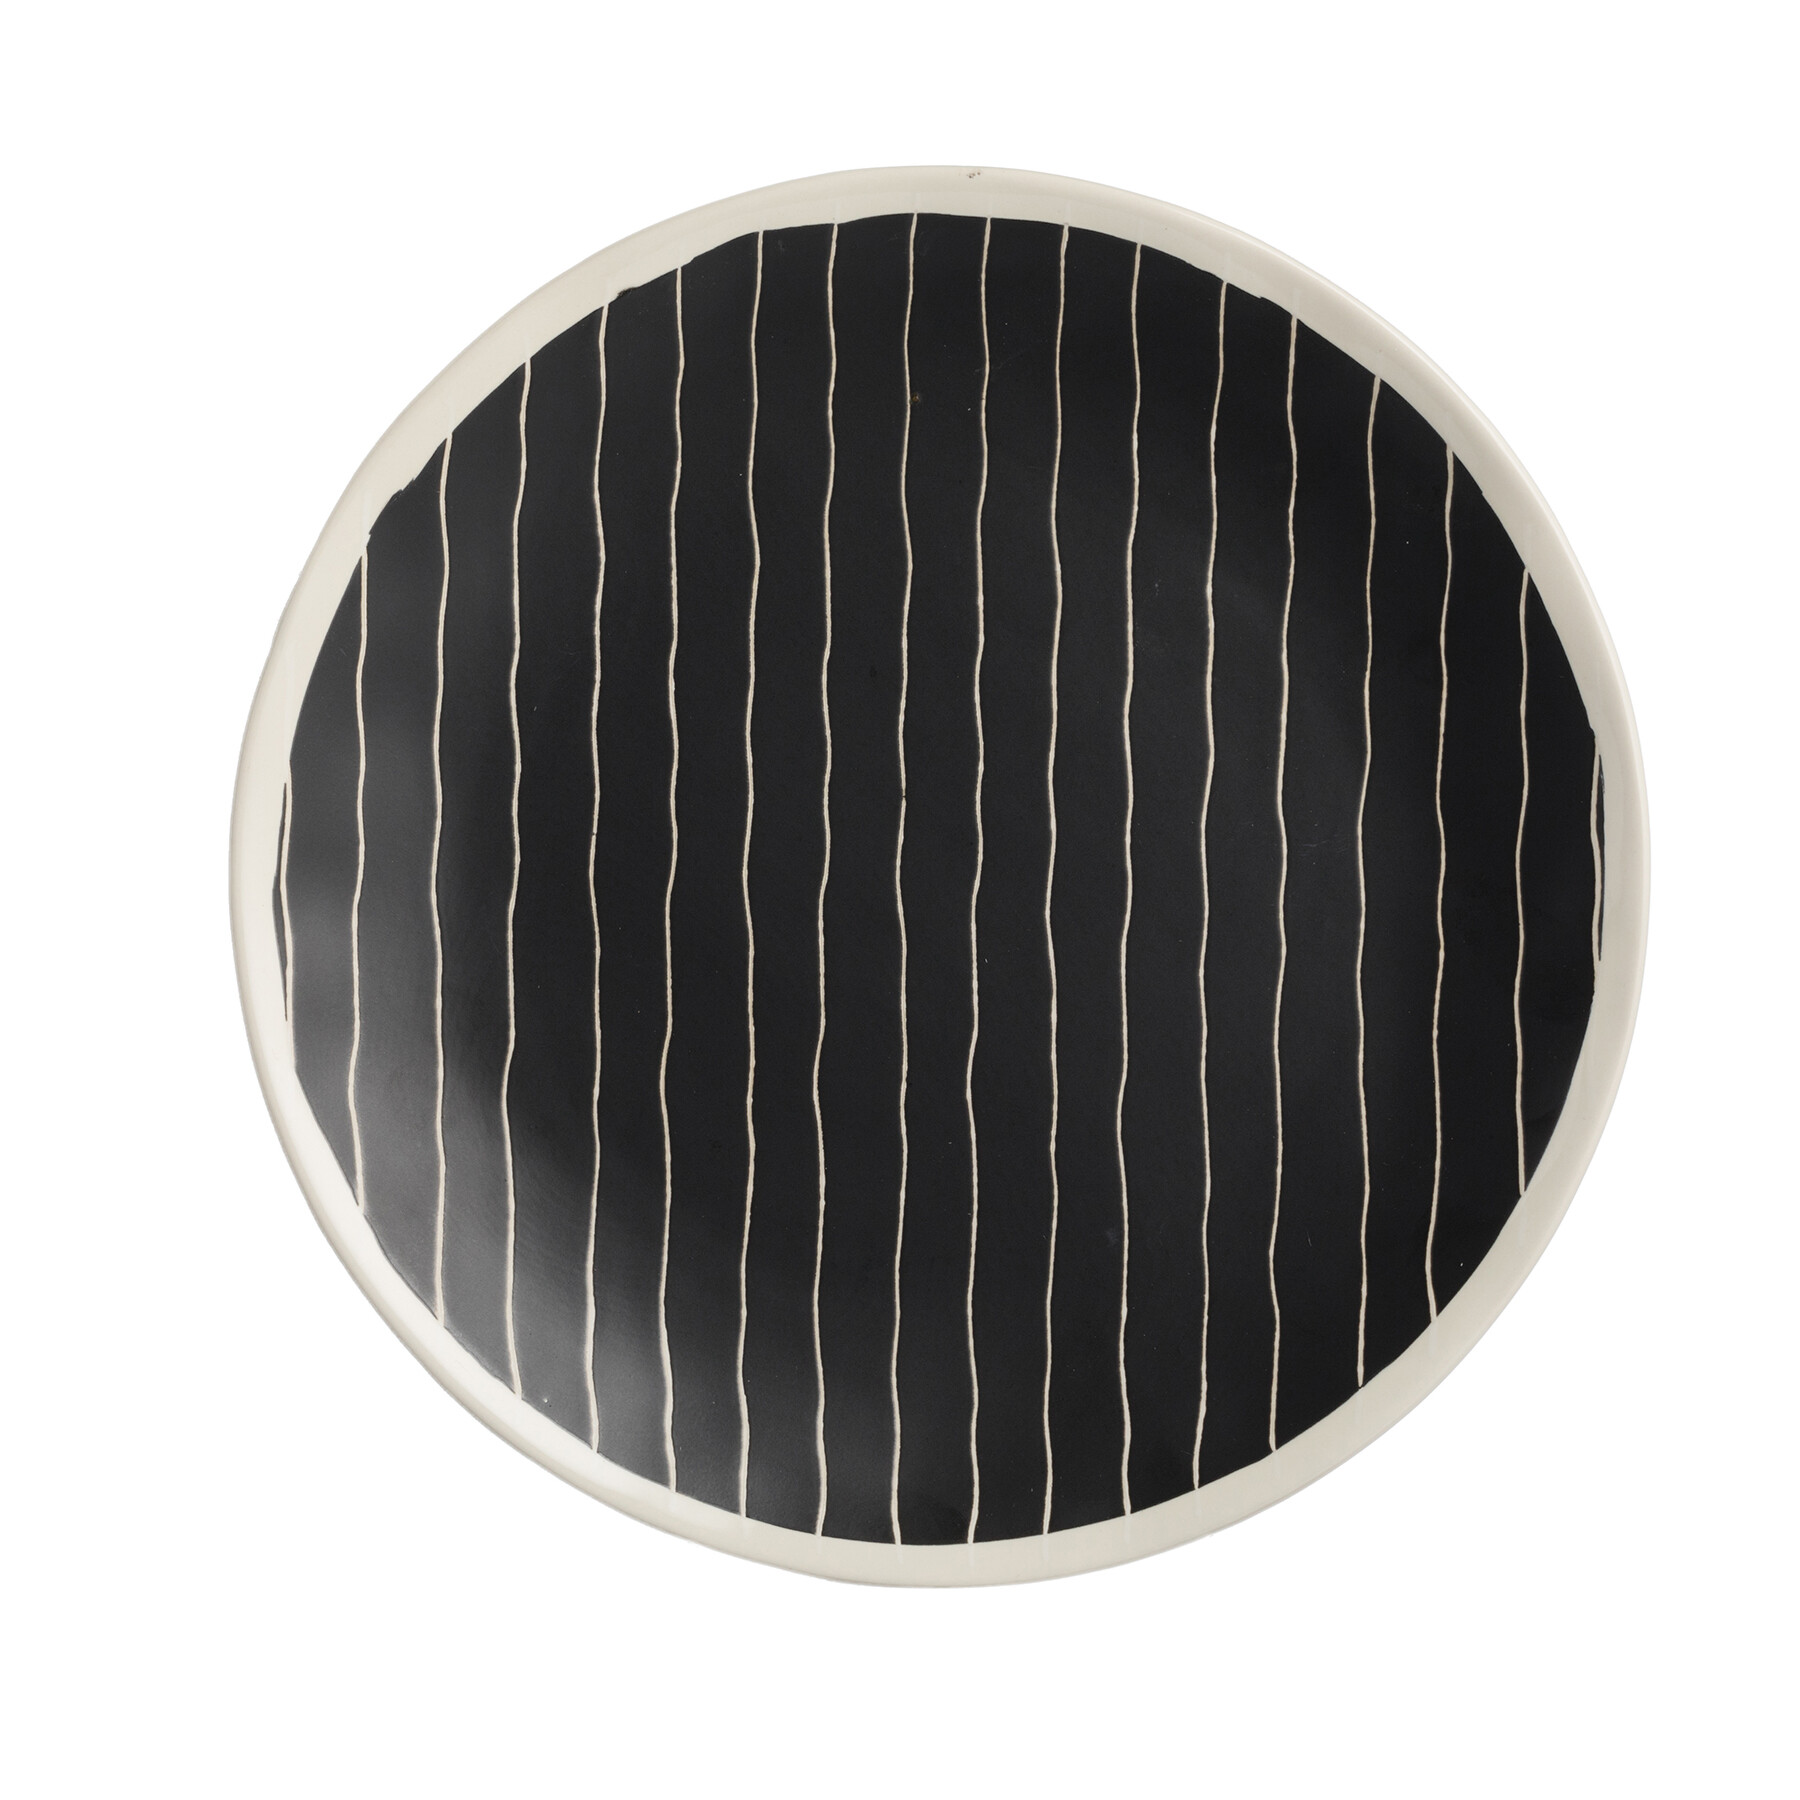 Тарелка керамическая ручной росписи 26 см черная Stripes